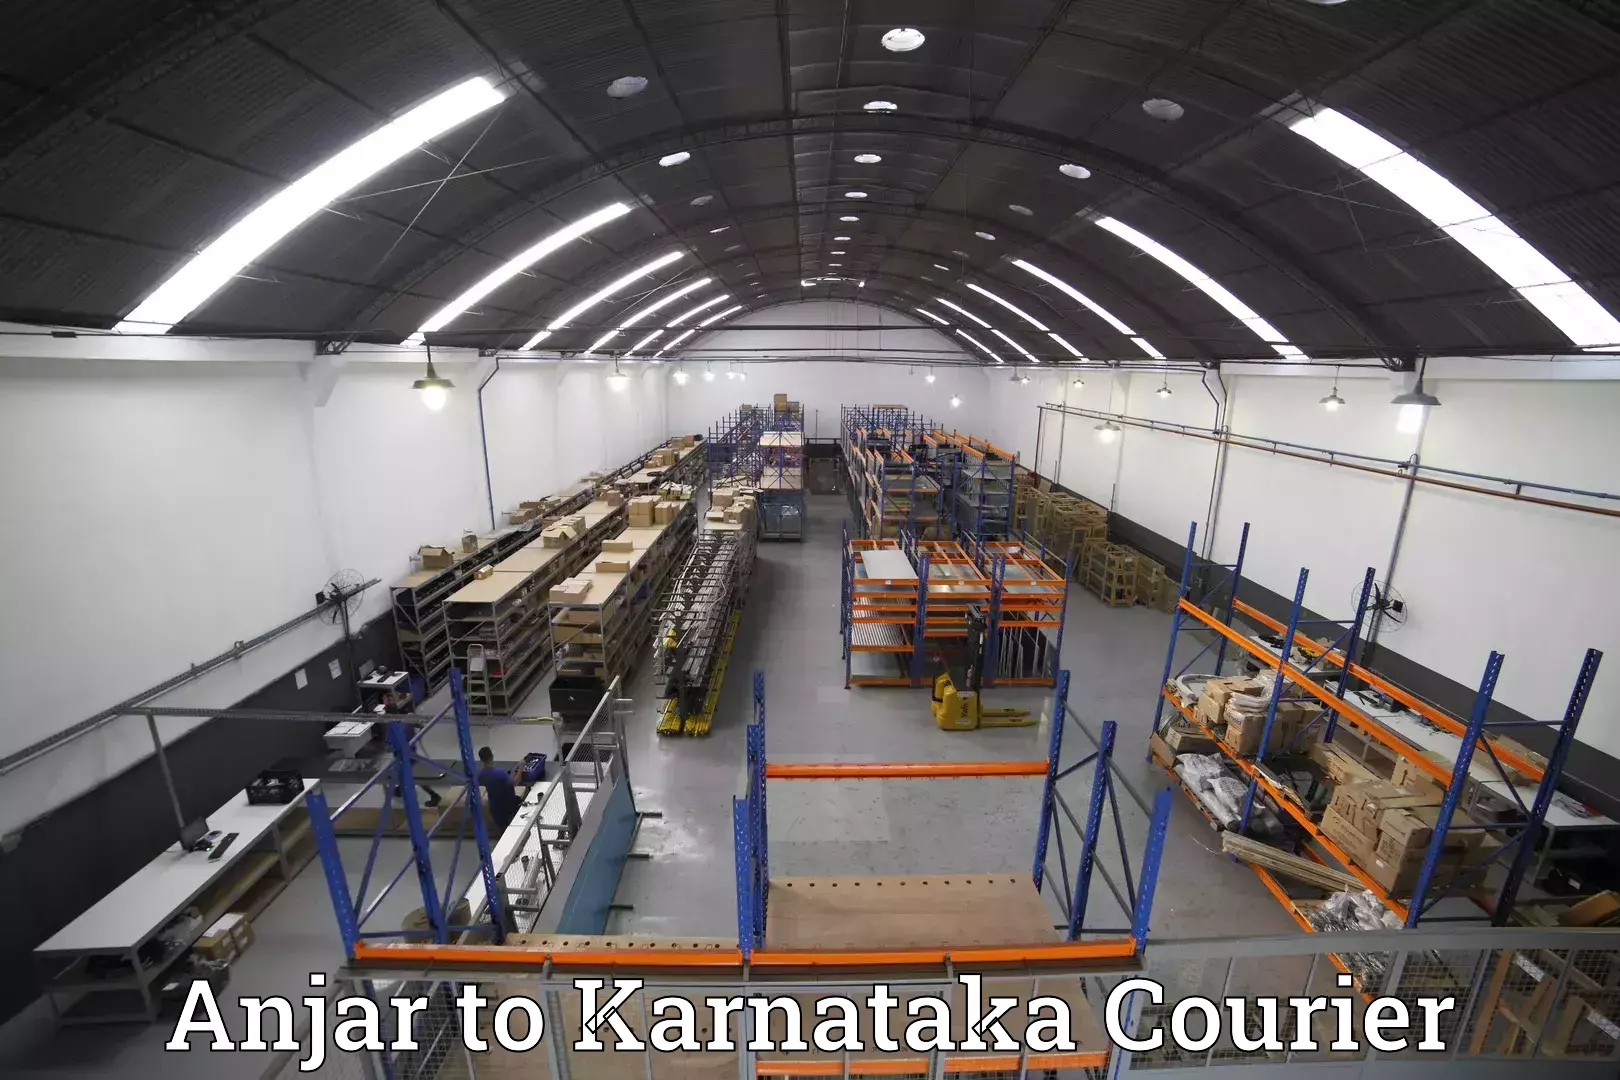 Baggage shipping service Anjar to Karnataka